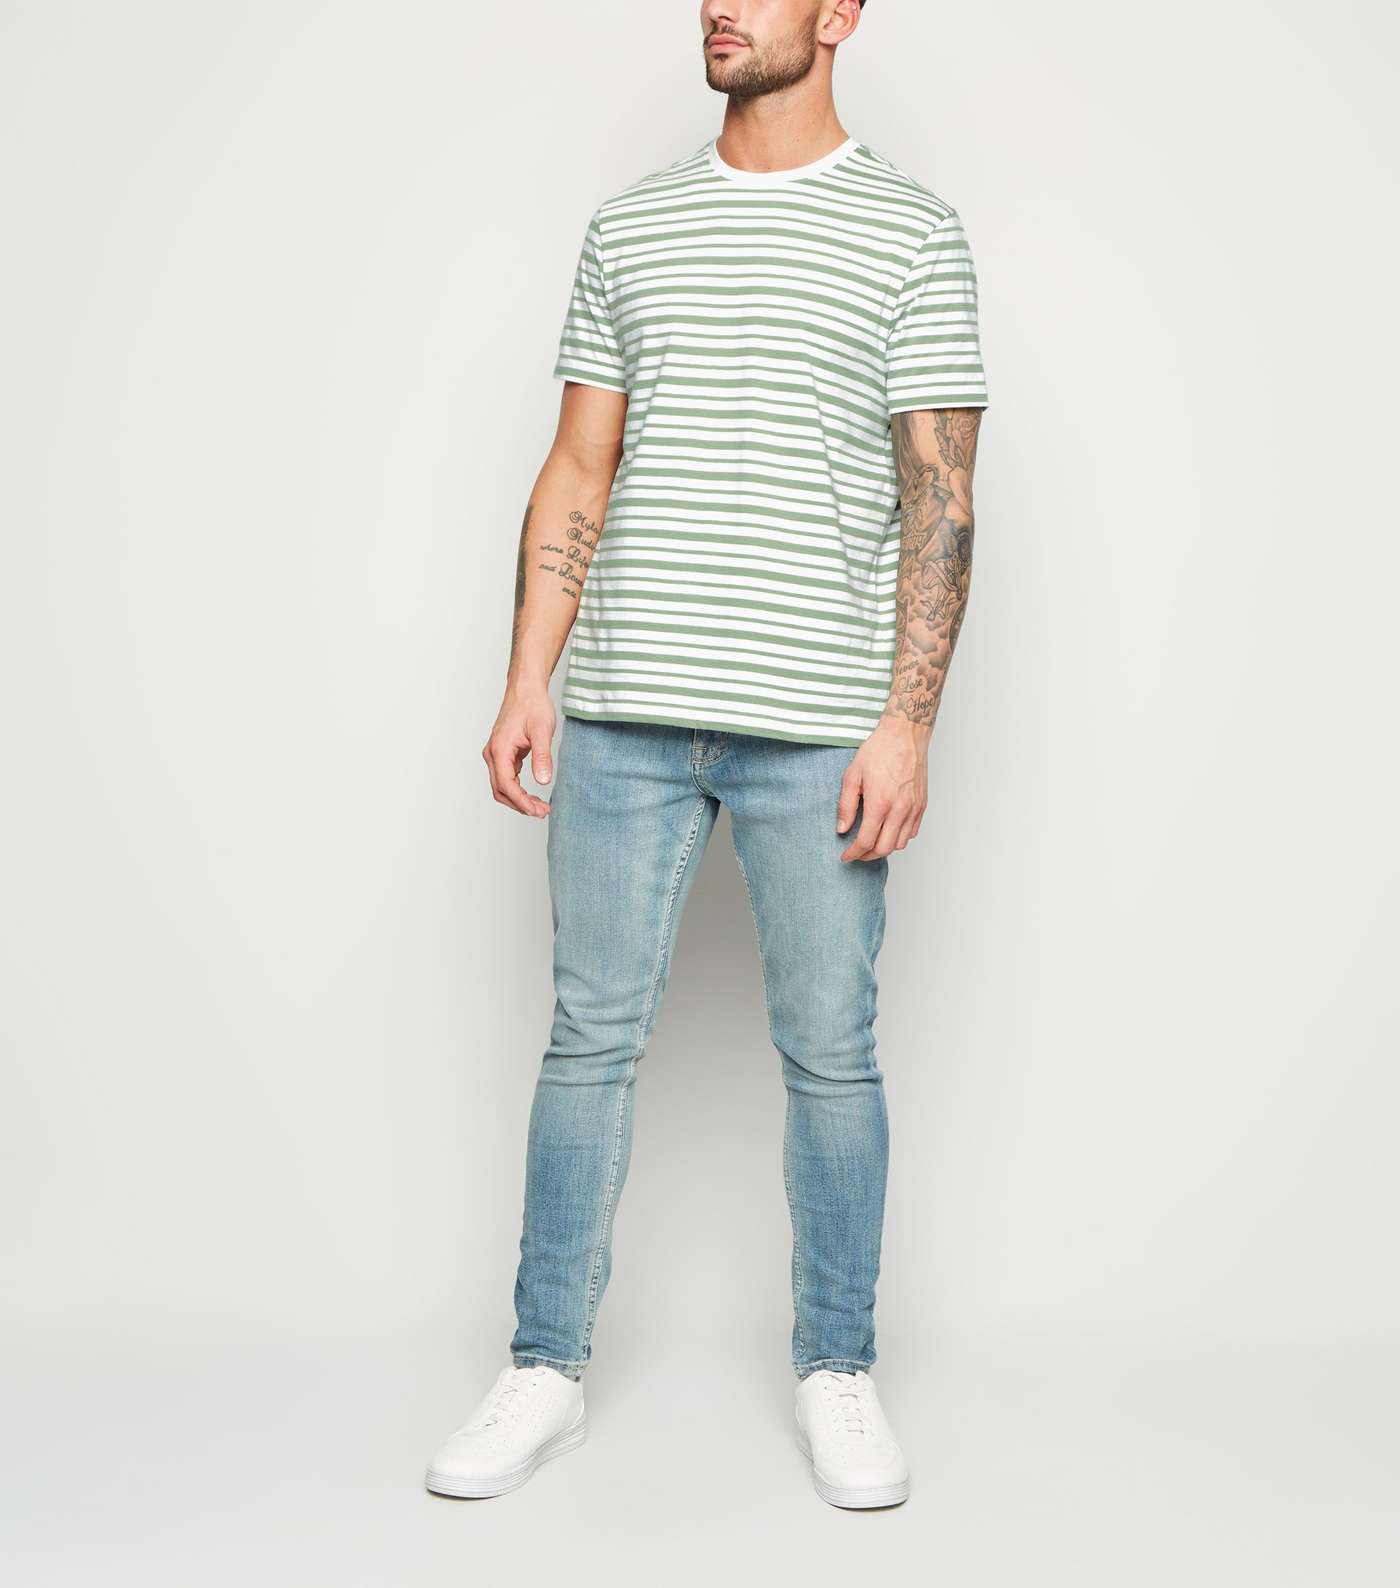 Olive Stripe Short Sleeve T-Shirt Image 2